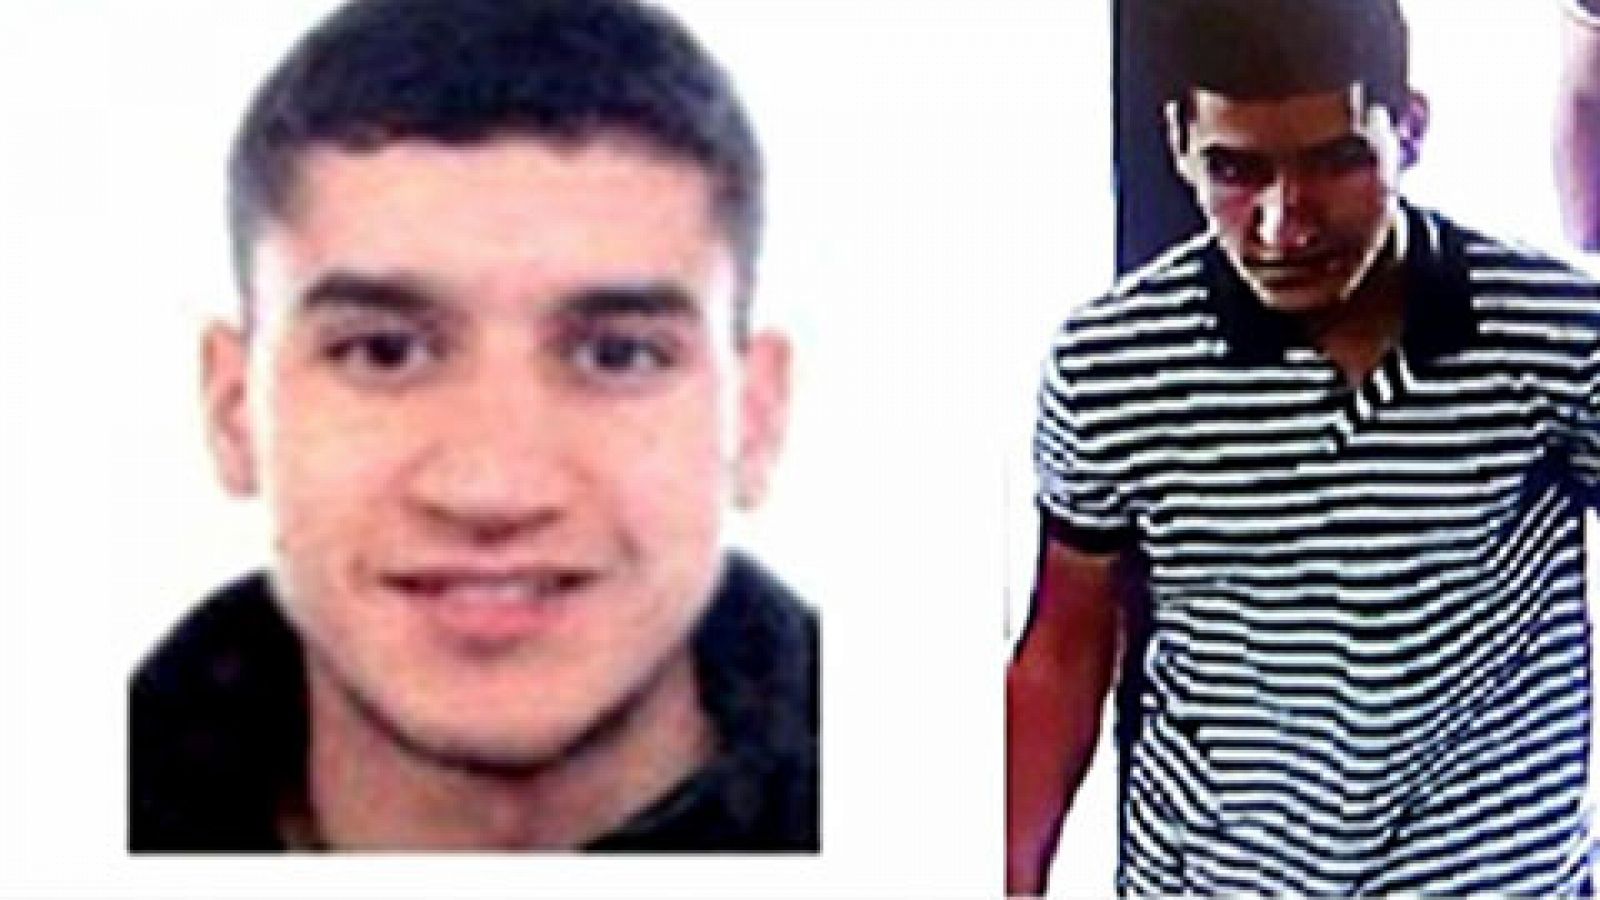 Los Mossos confirman que Younes Abouyaaqoub asesinó a Pau Pérez y elevan a 15 las víctimas